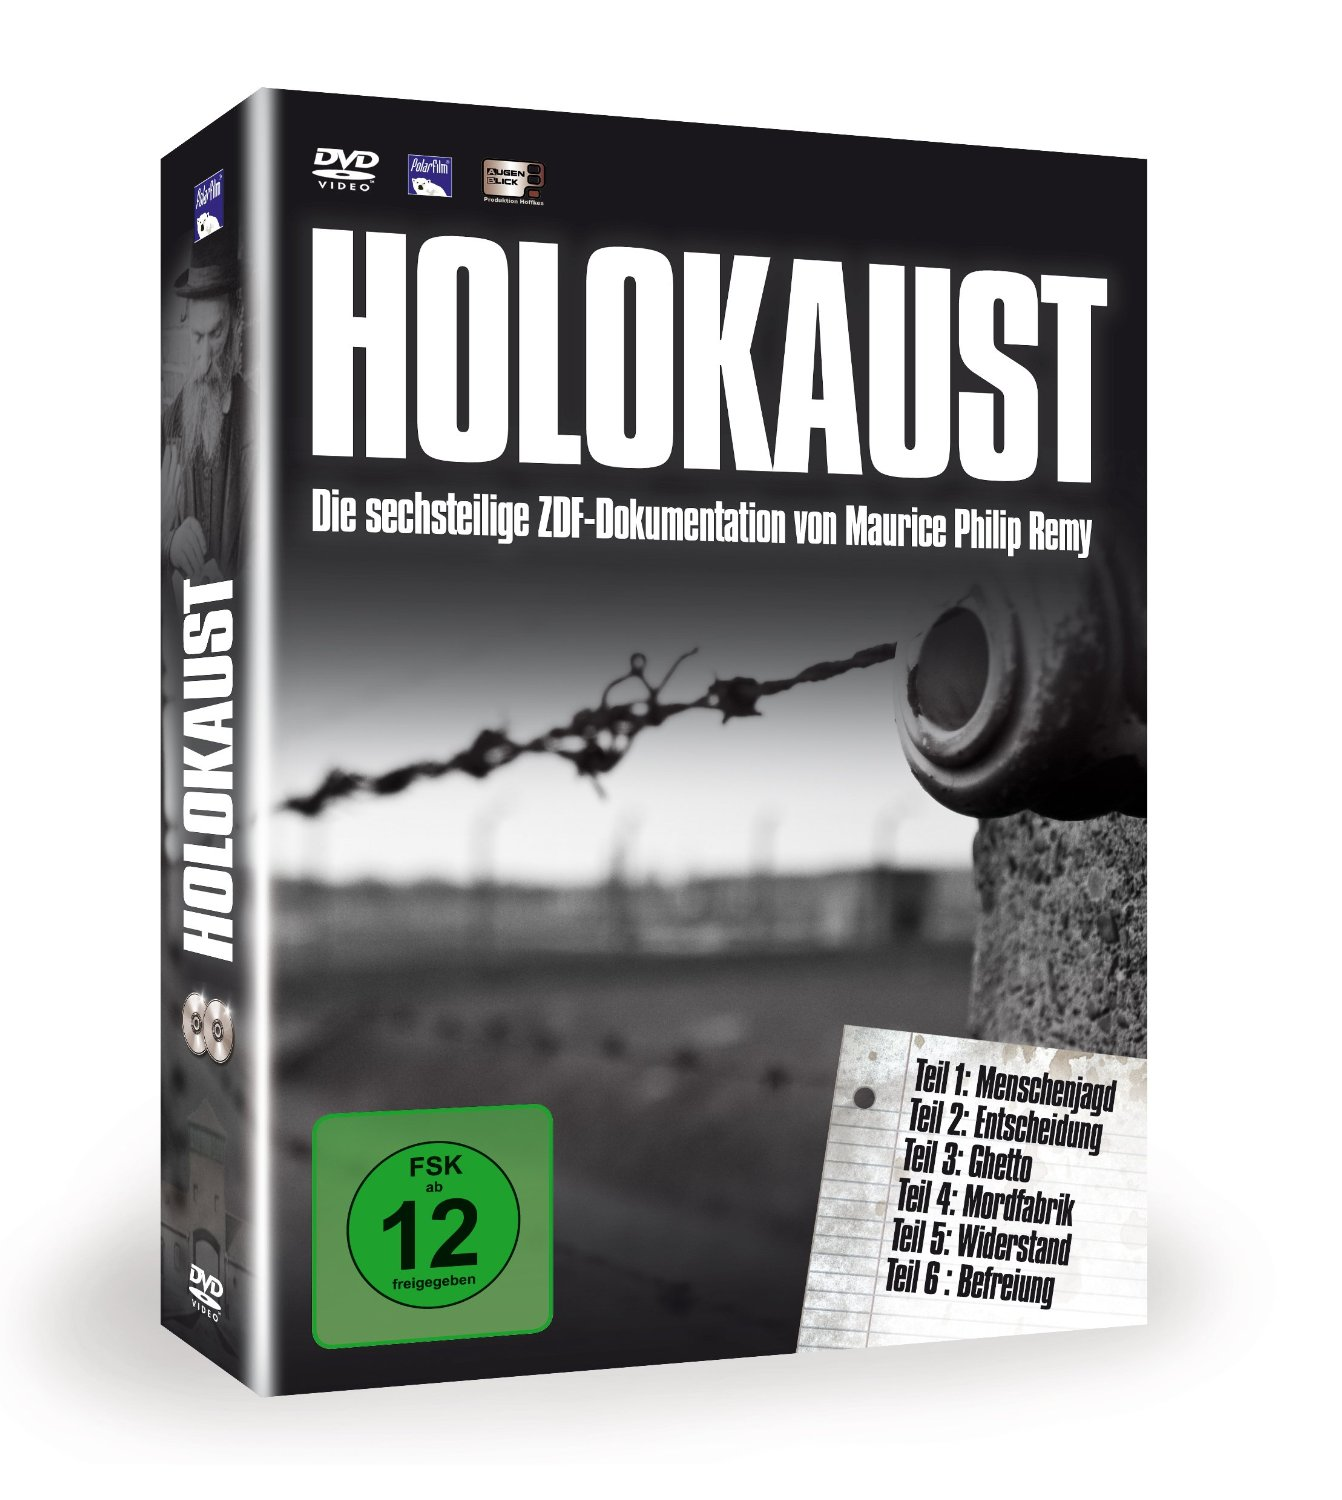 HOLOKAUST - Die sechsteilige DVD ZDF-Dokumentation Remy von Maurice Philip